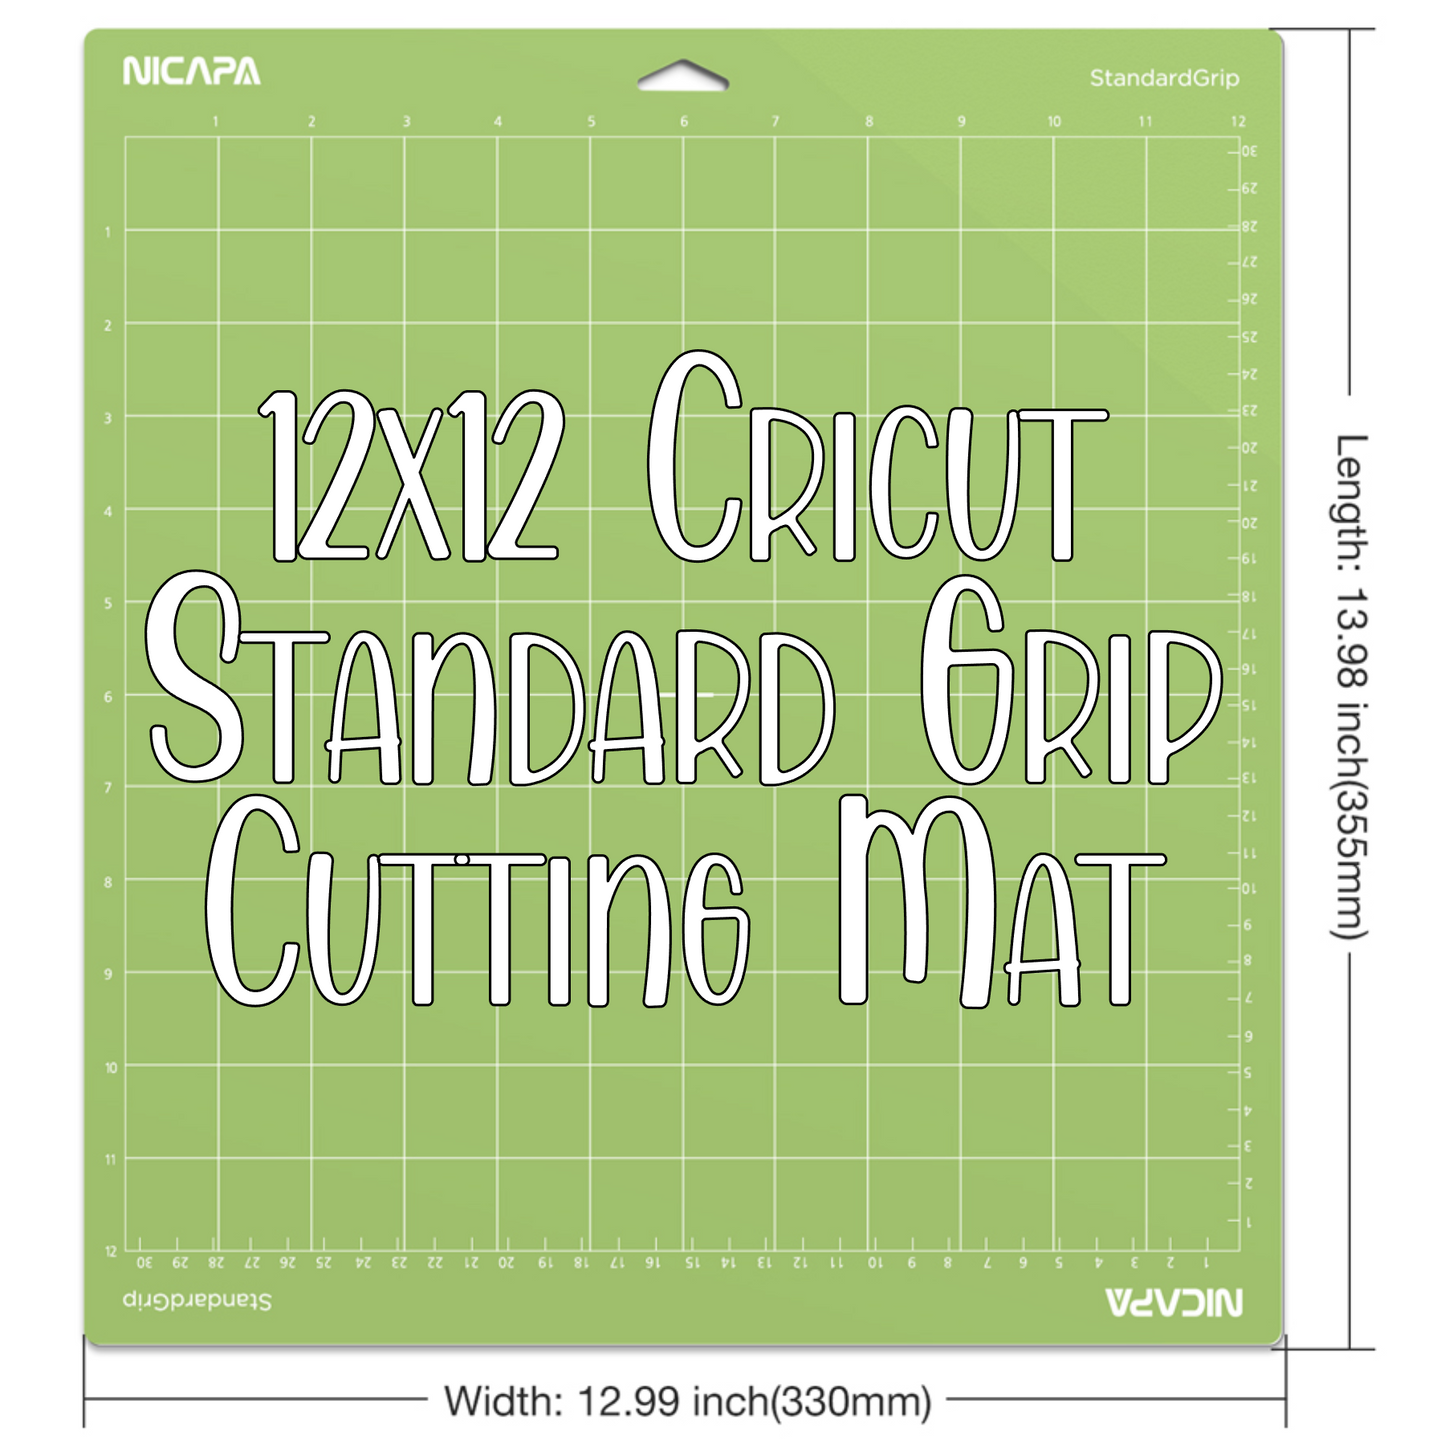 NICAPA 12x12 Cricut Cutting Mat - STANDARD GRIP